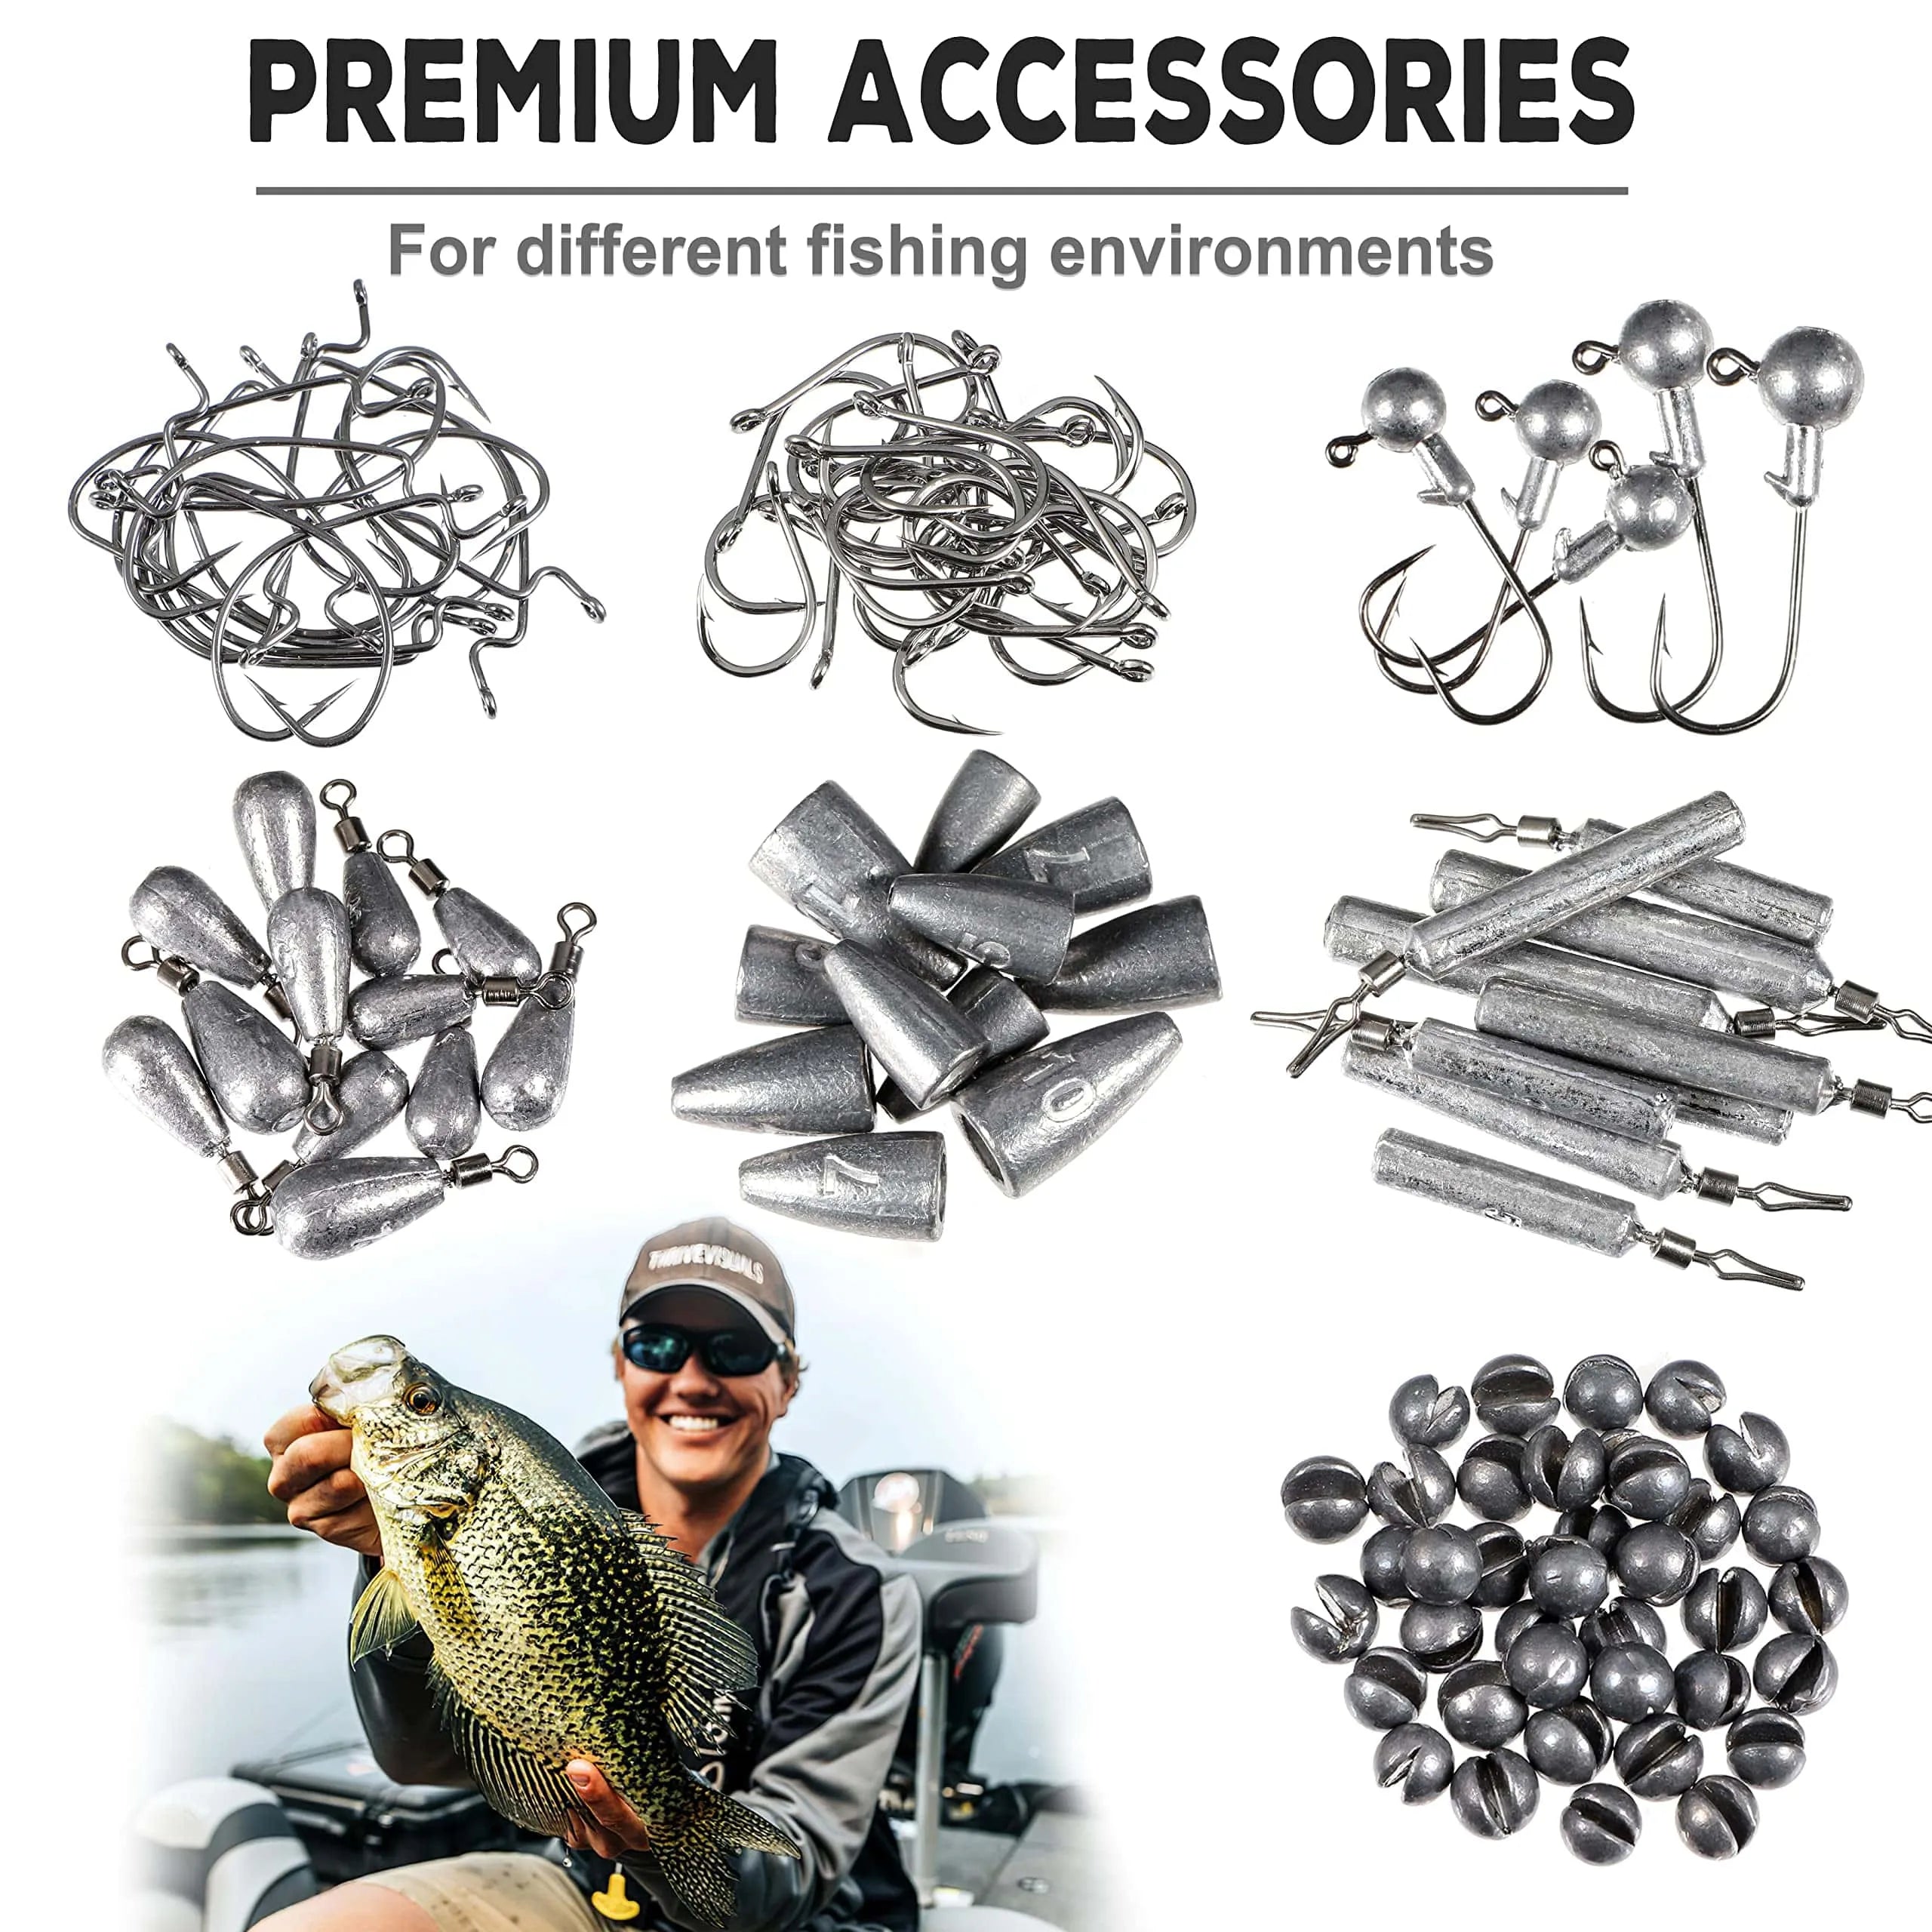 PLUSINNO 387 PCS Fishing Accessories Kit